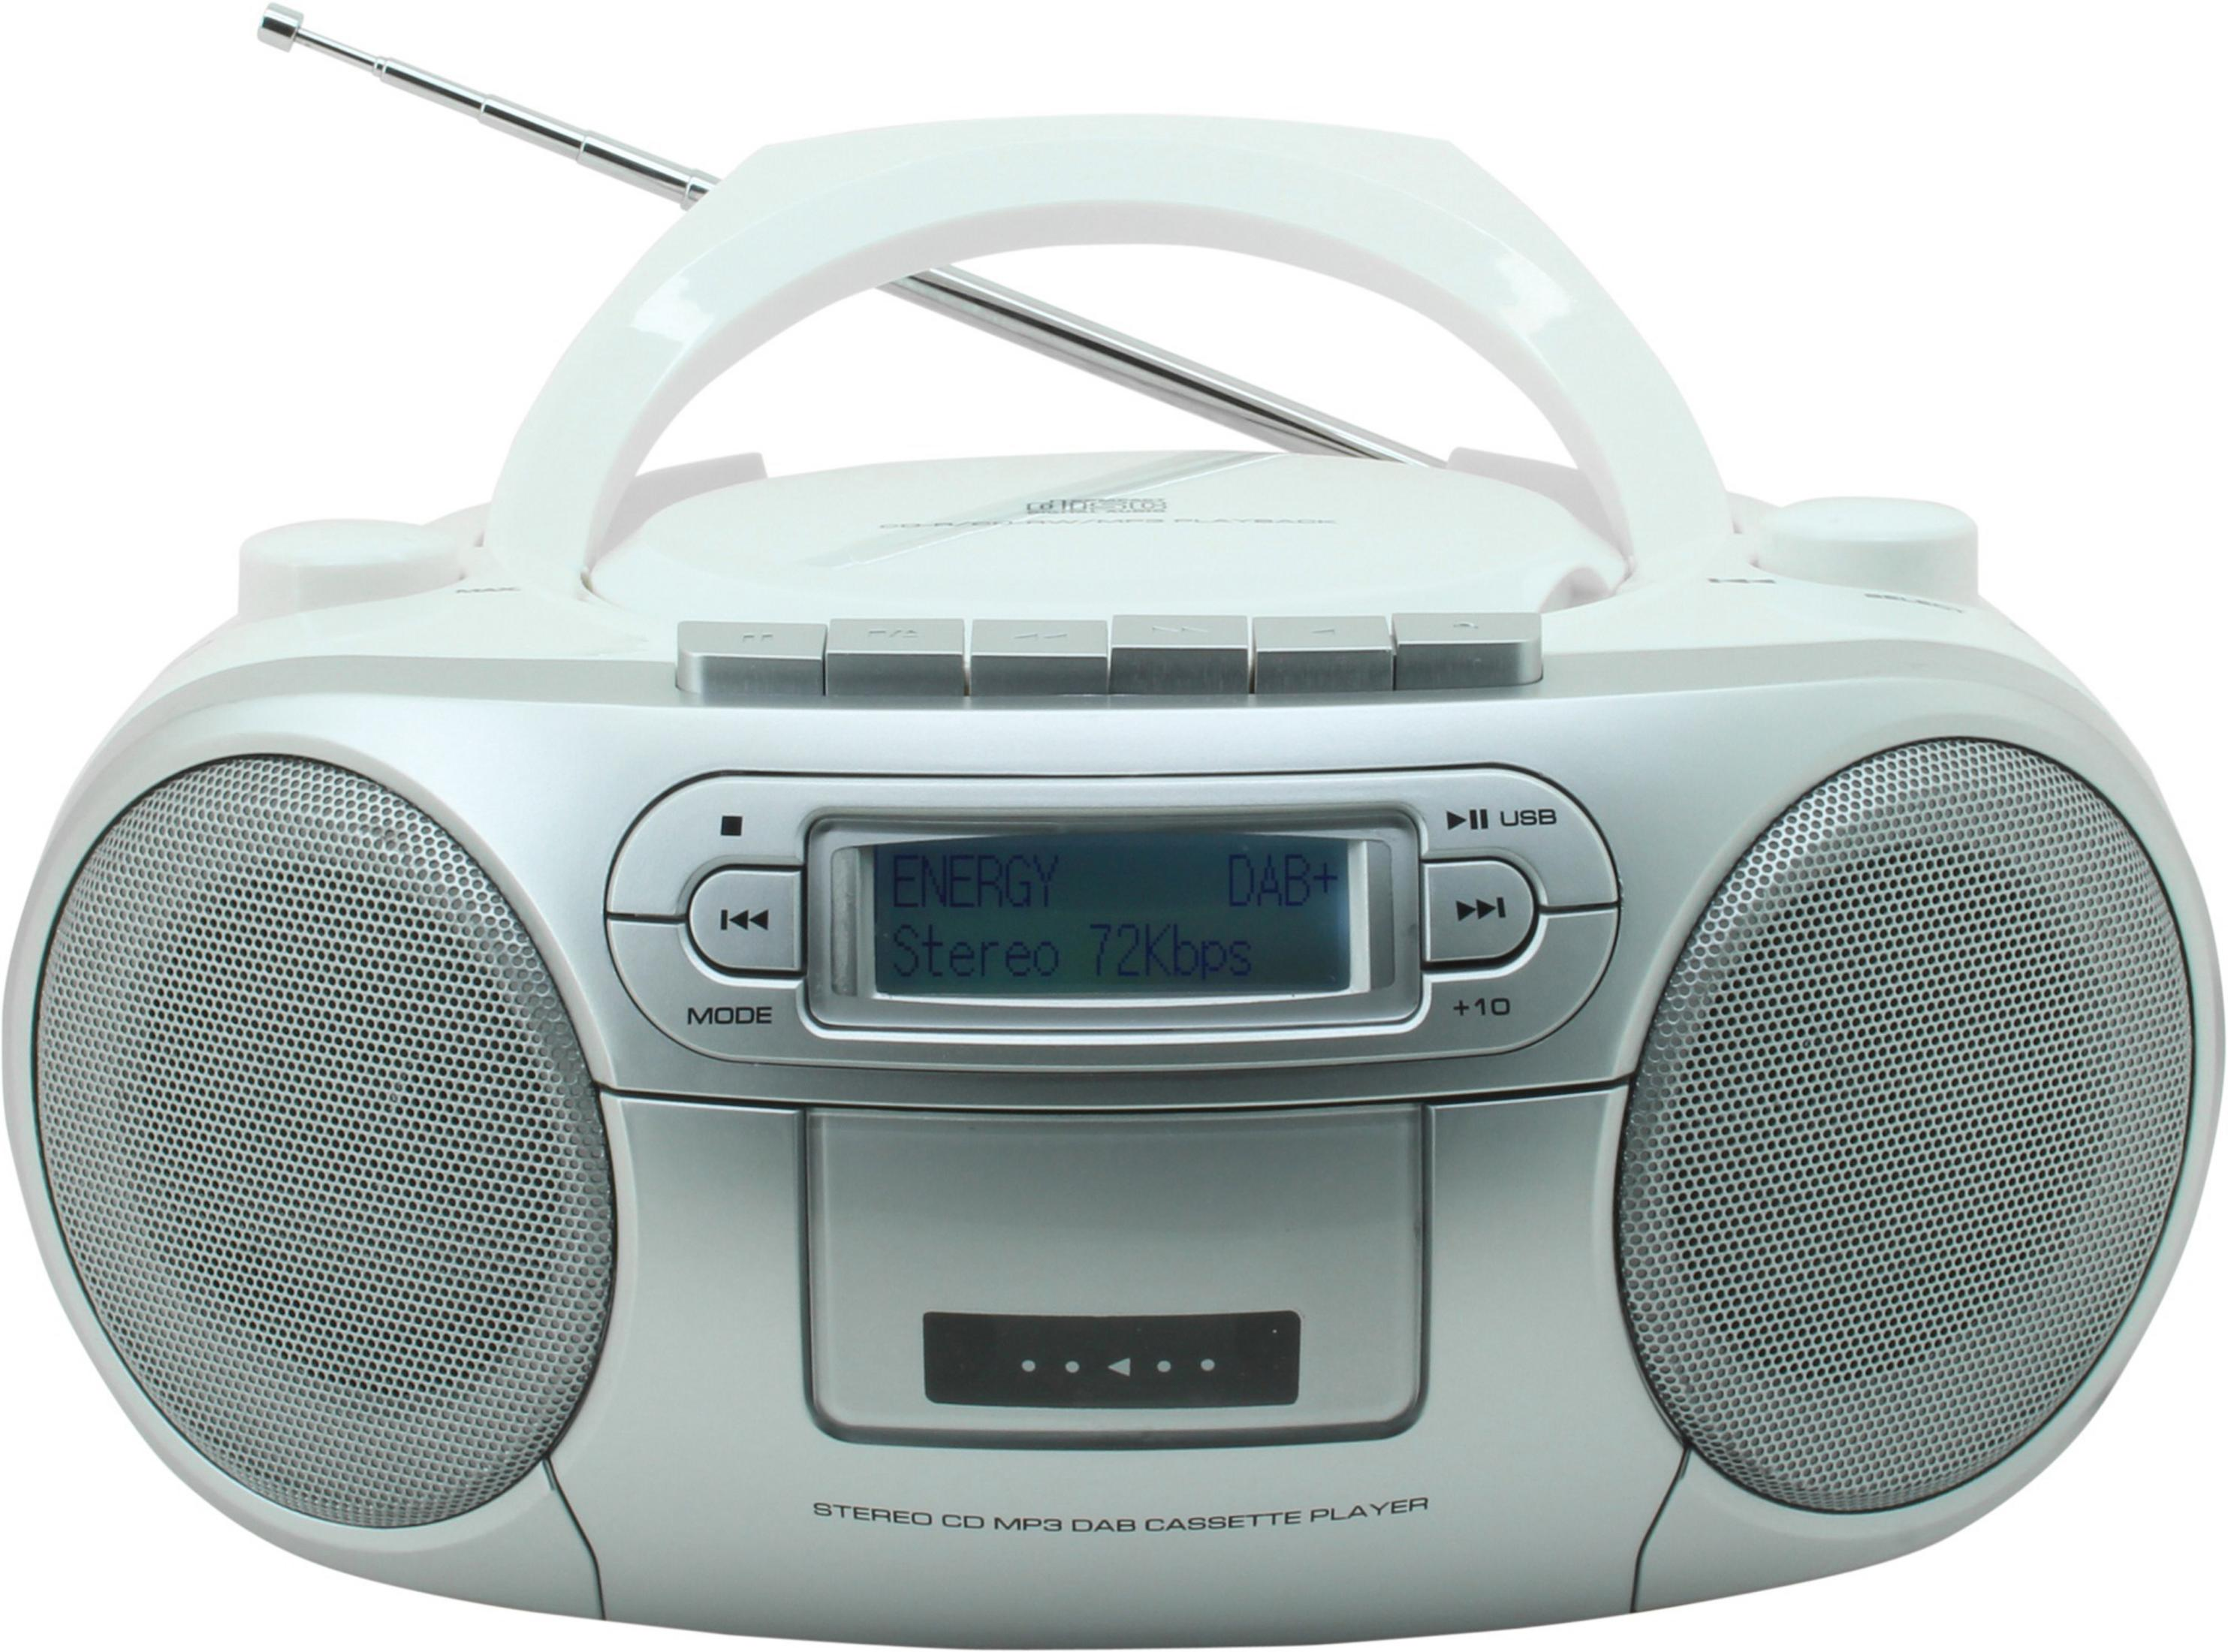 Weiß/Silber WE SCD 7900 SOUNDMASTER Radio, WEISS